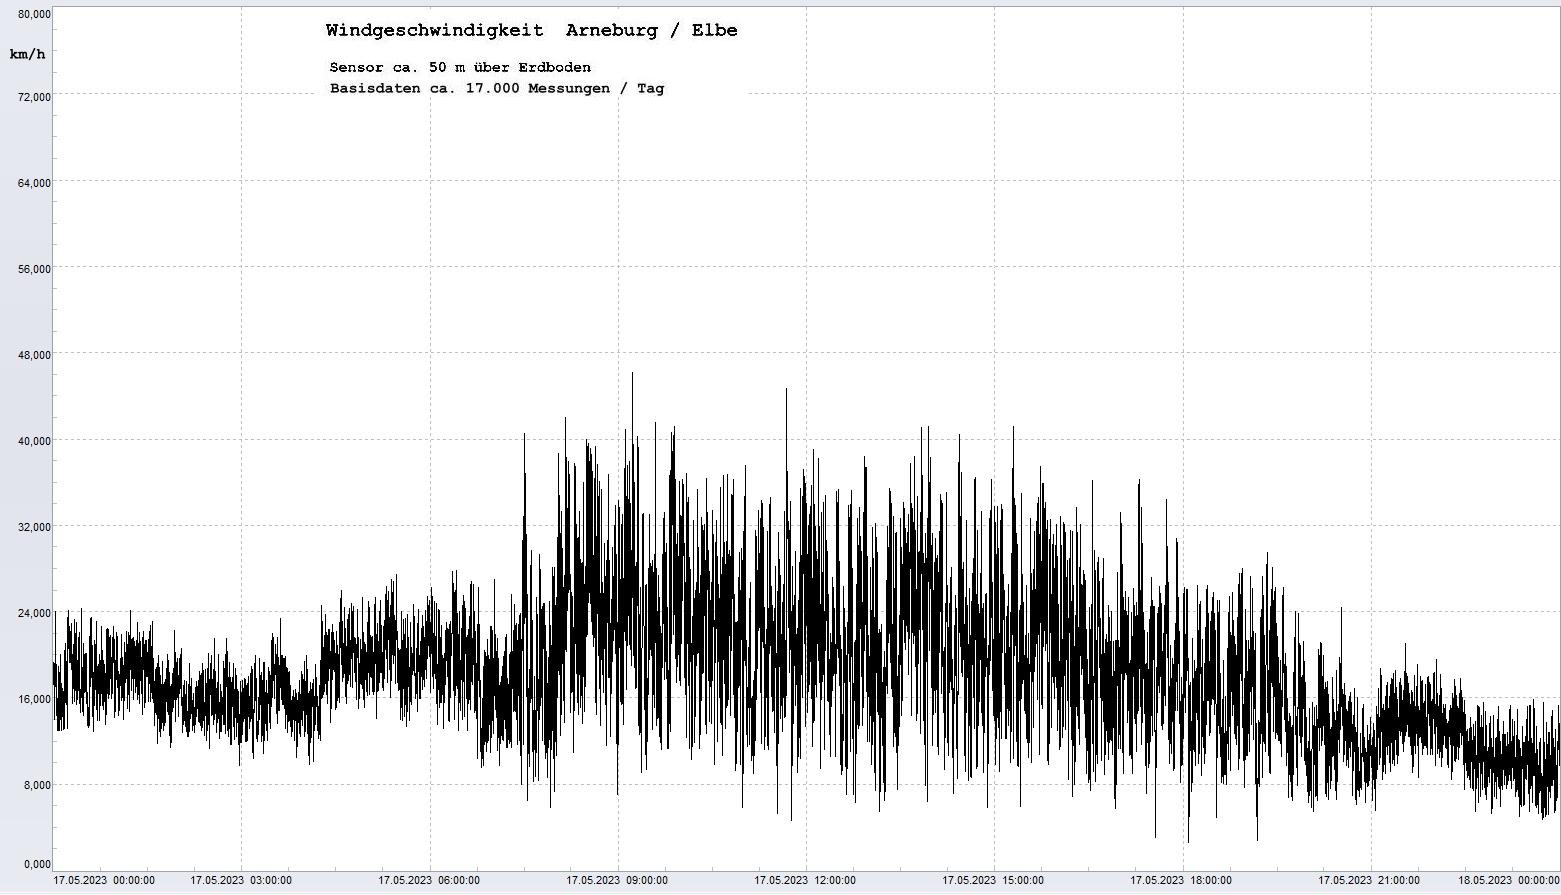 Arneburg Tages-Diagramm Winddaten, 17.05.2023
  Diagramm, Sensor auf Gebäude, ca. 50 m über Erdboden, Basis: 5s-Aufzeichnung